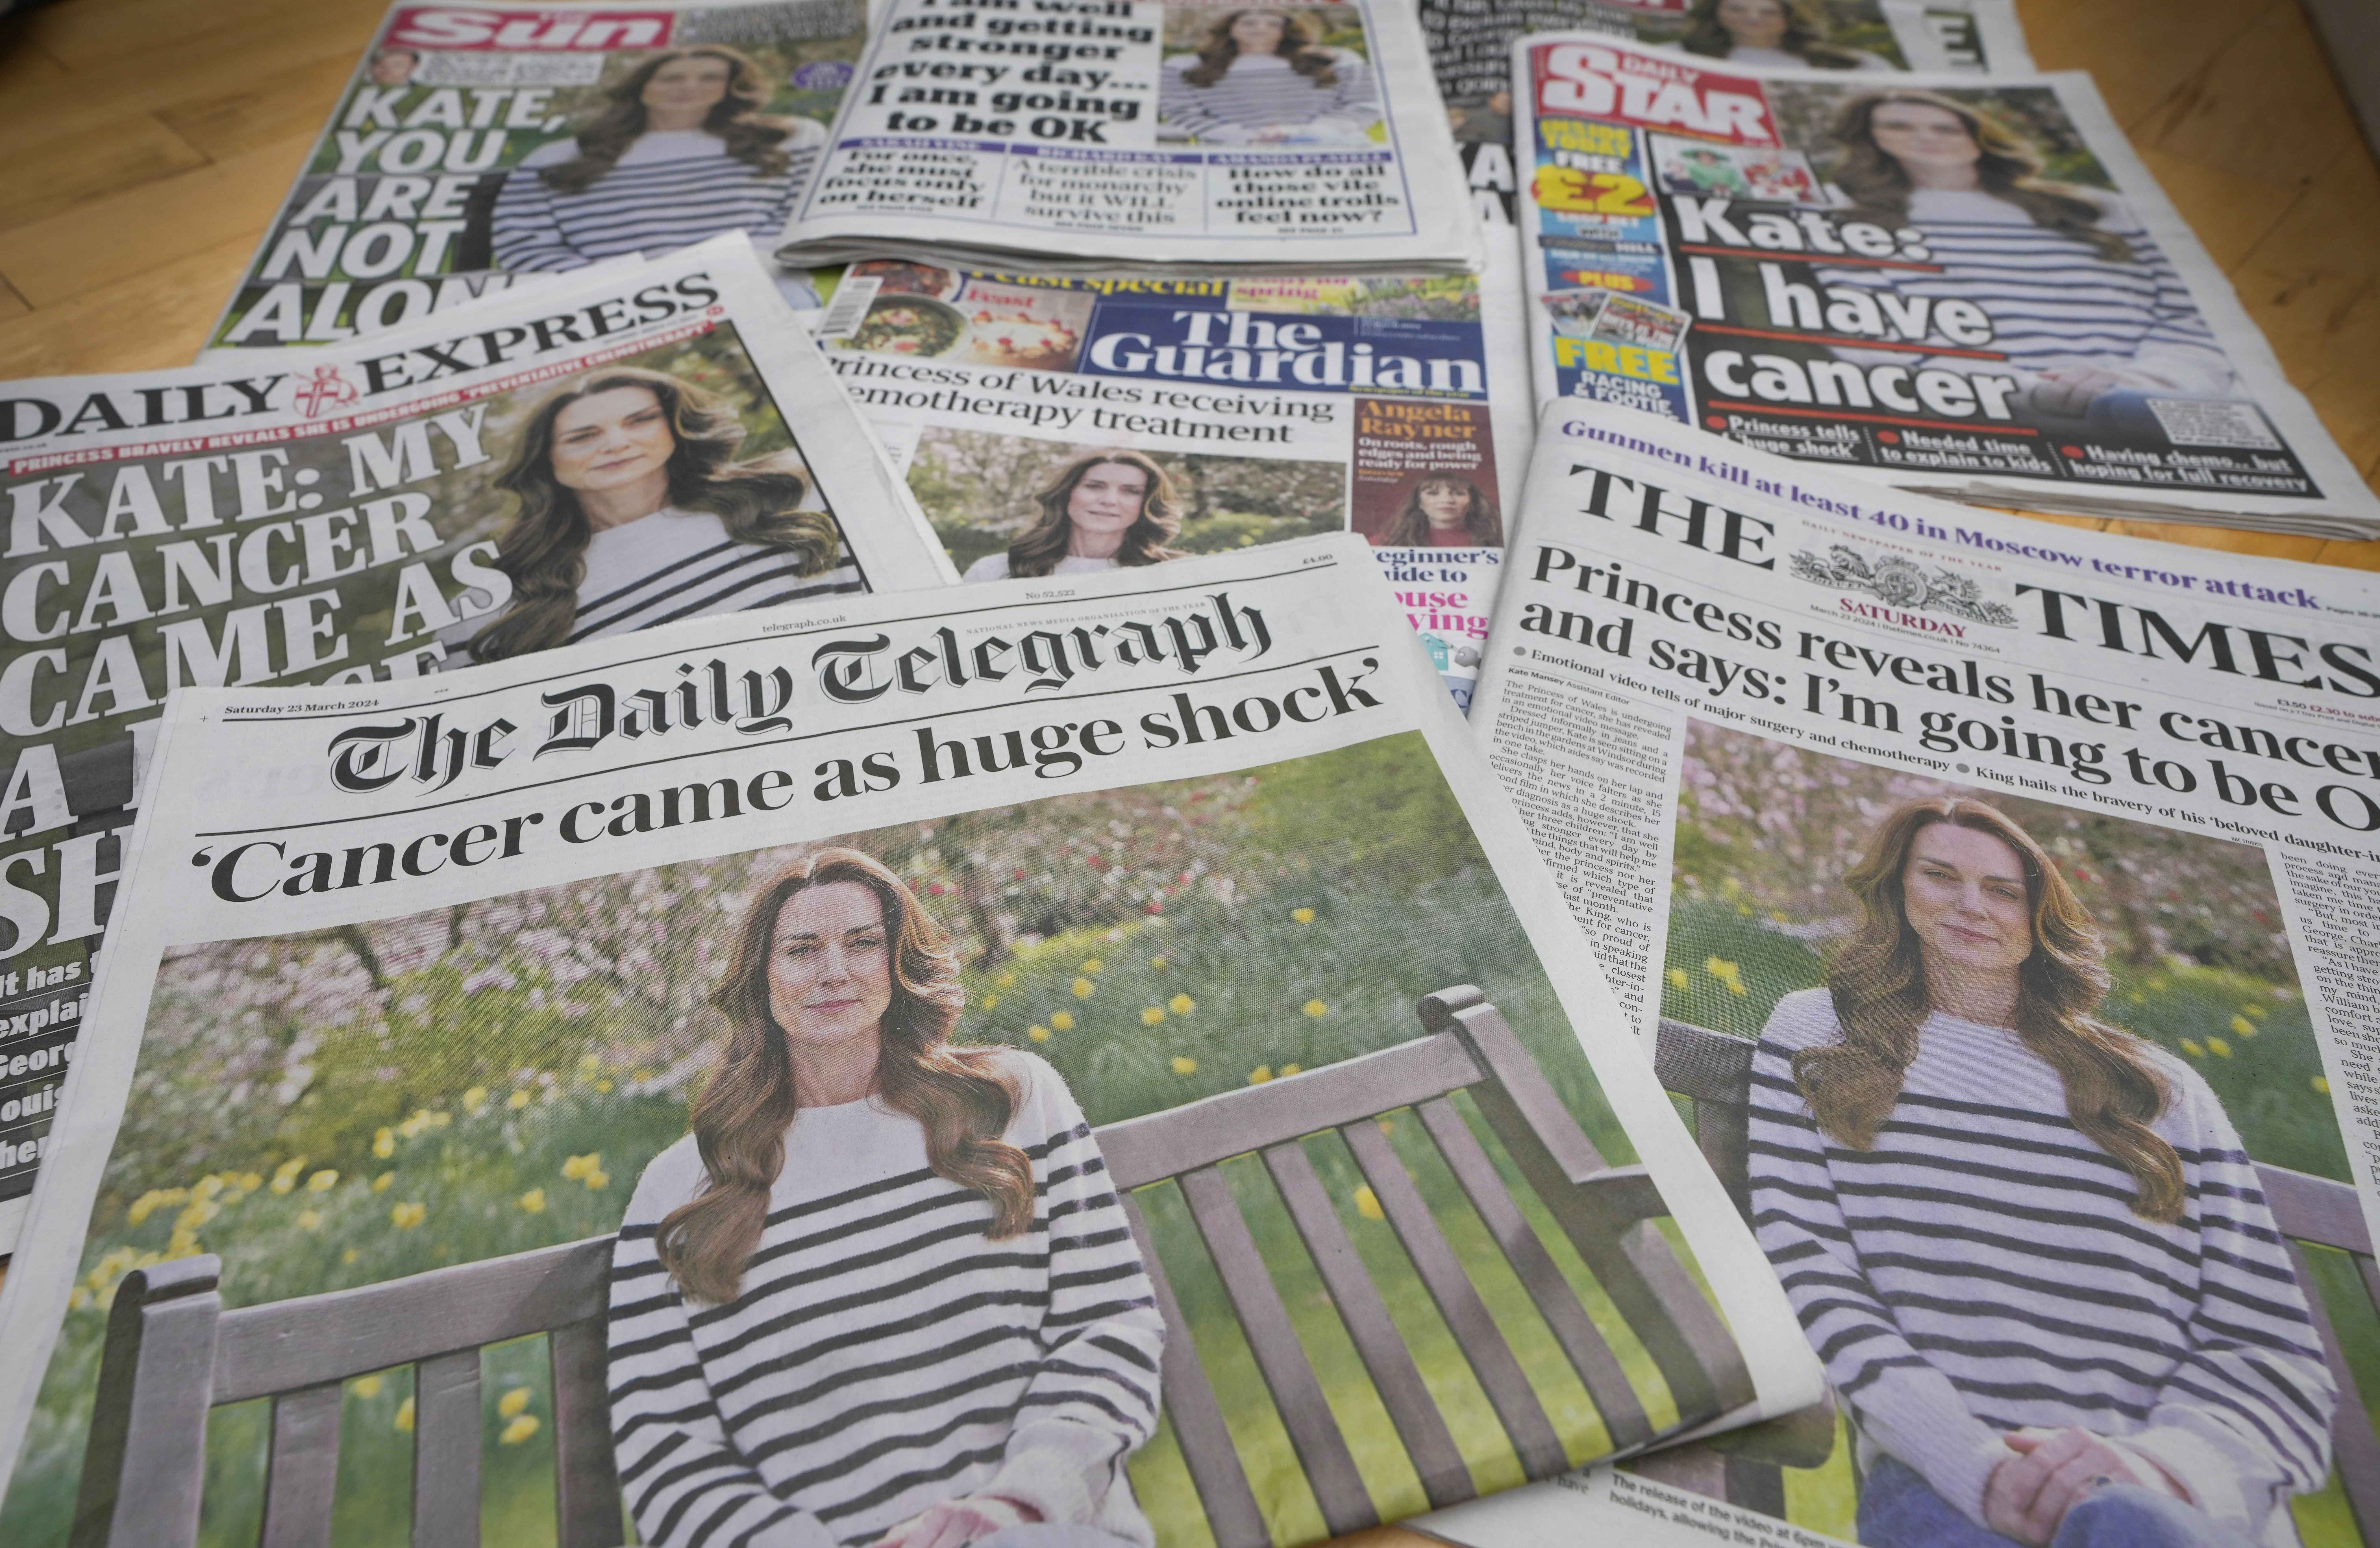 Zusammenschnitt der Titelseiten einiger britischer Tageszeitungen.